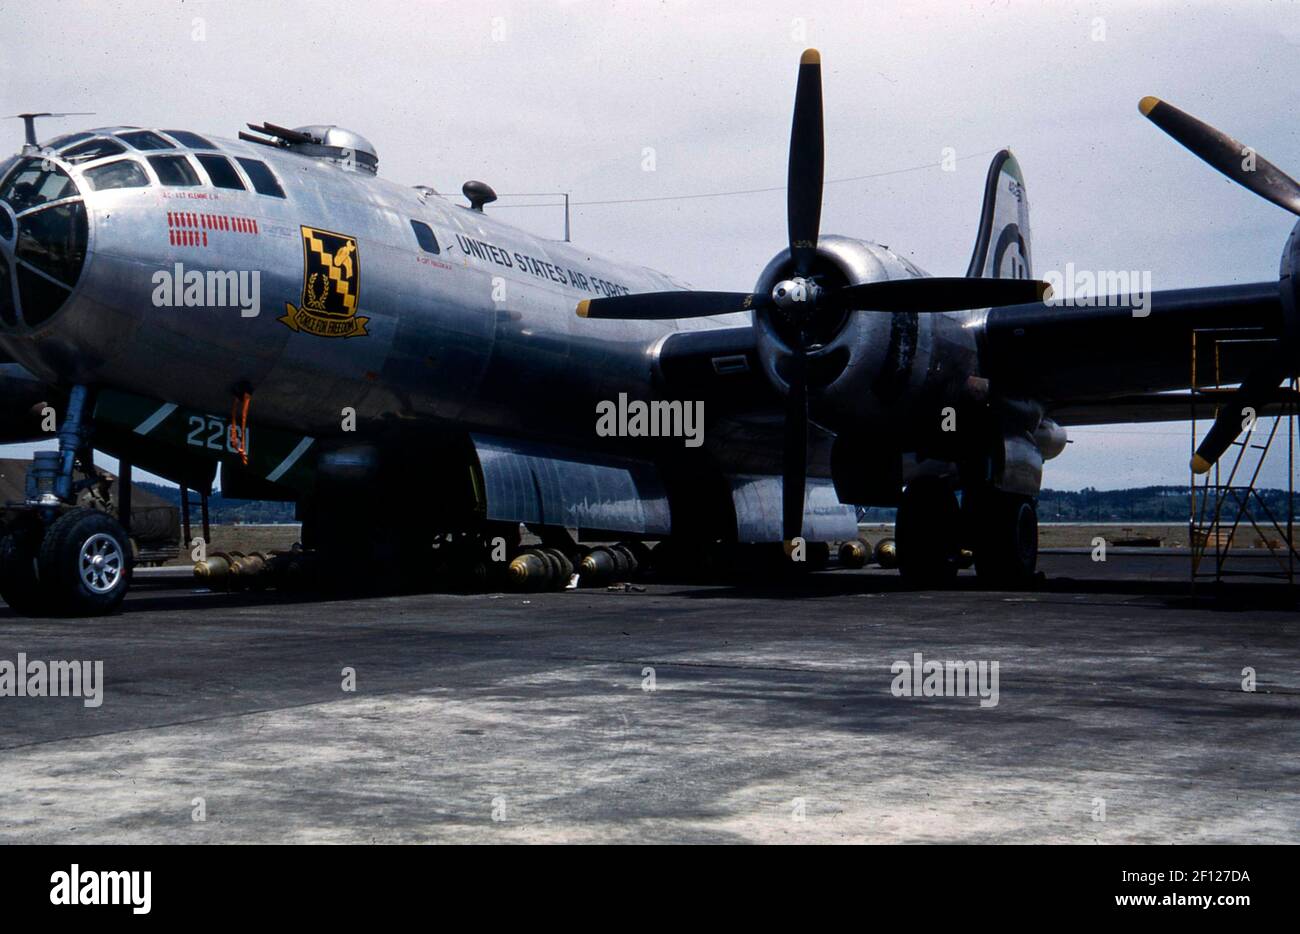 Dreiviertel linke Vorderansicht einer Boeing B-29 Superfortress mit Bomben unter dem Flugzeug. Nasenkunst umfasst Spitznamen "Kraft für Freiheit" mit Symbol, und die Anzahl der Bombenmissionen als Bomben dargestellt. Stockfoto